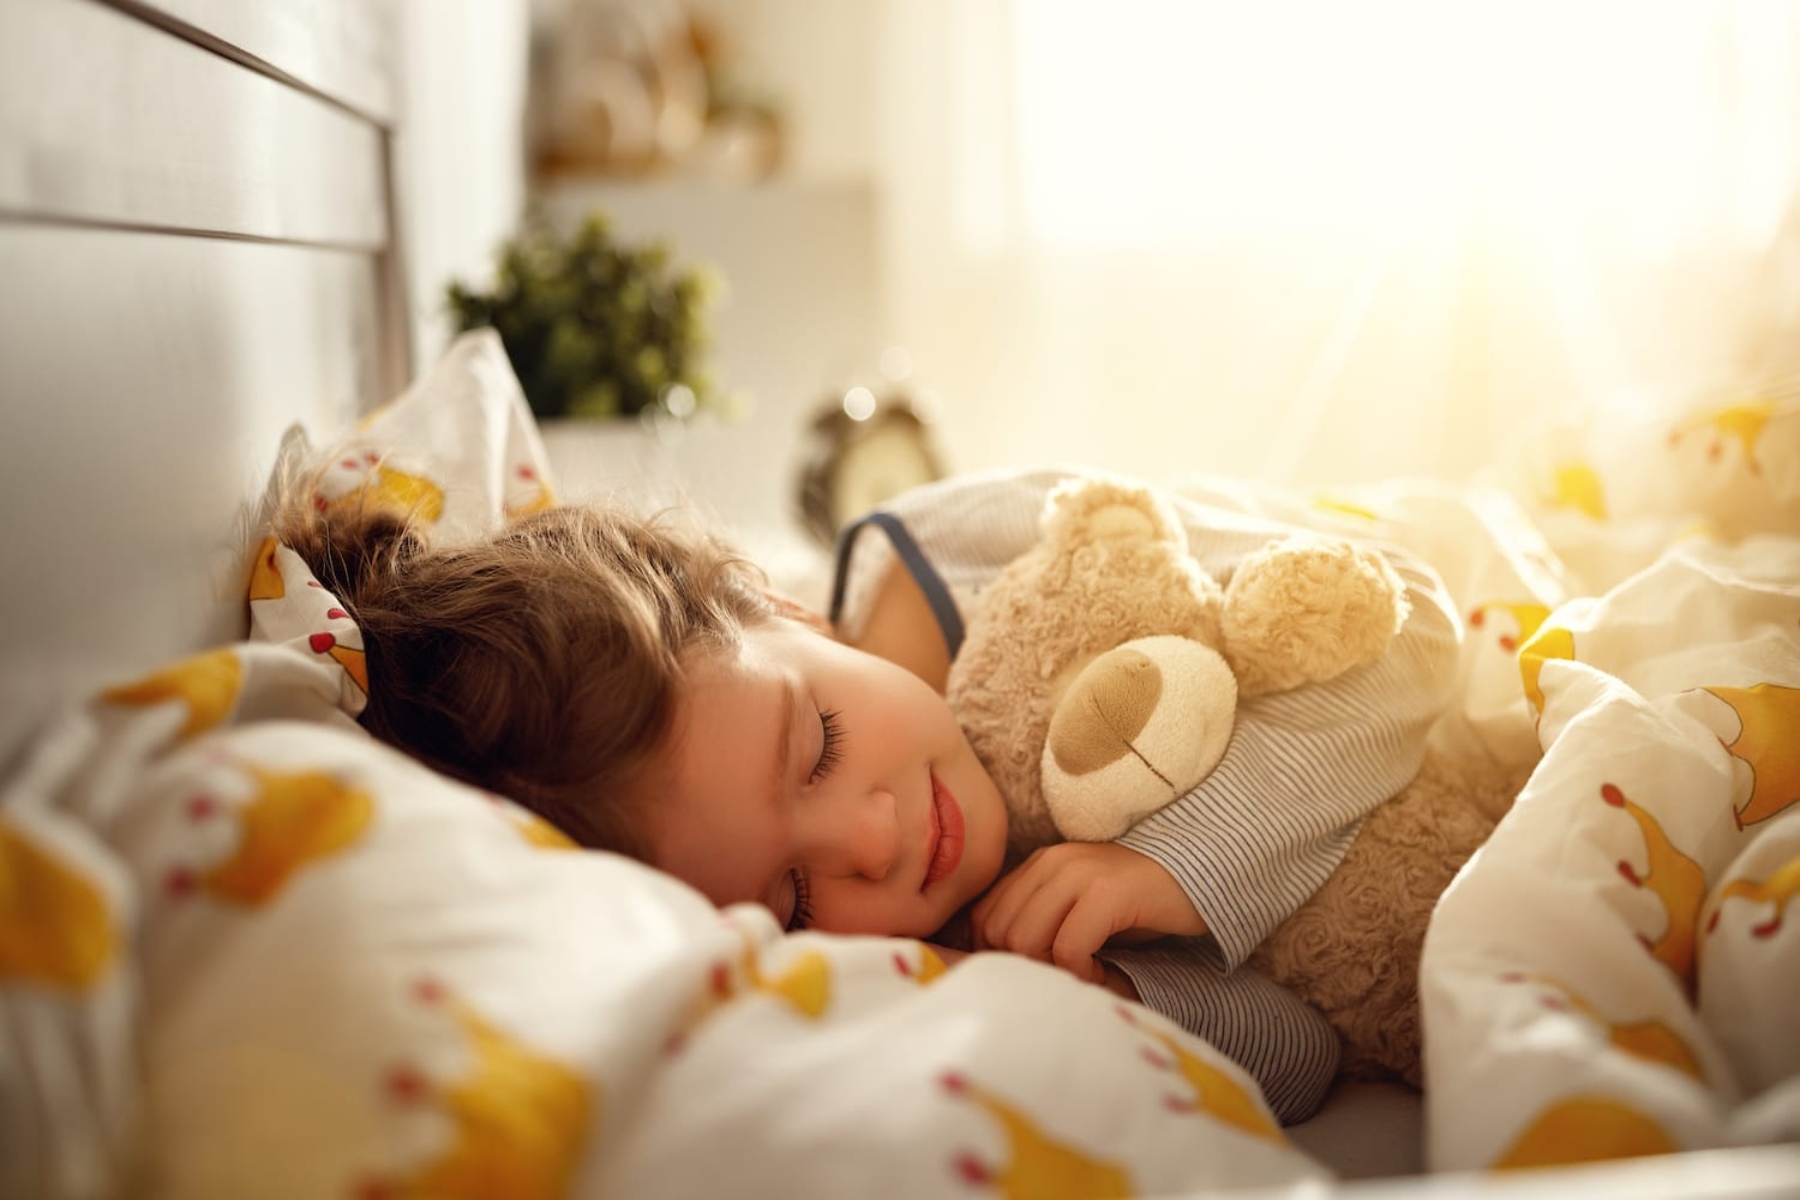 Ύπνος παιδιά: Σχεδιάστε μια χαλαρωτική ρουτίνα ύπνου για ξένοιαστα πρωινά